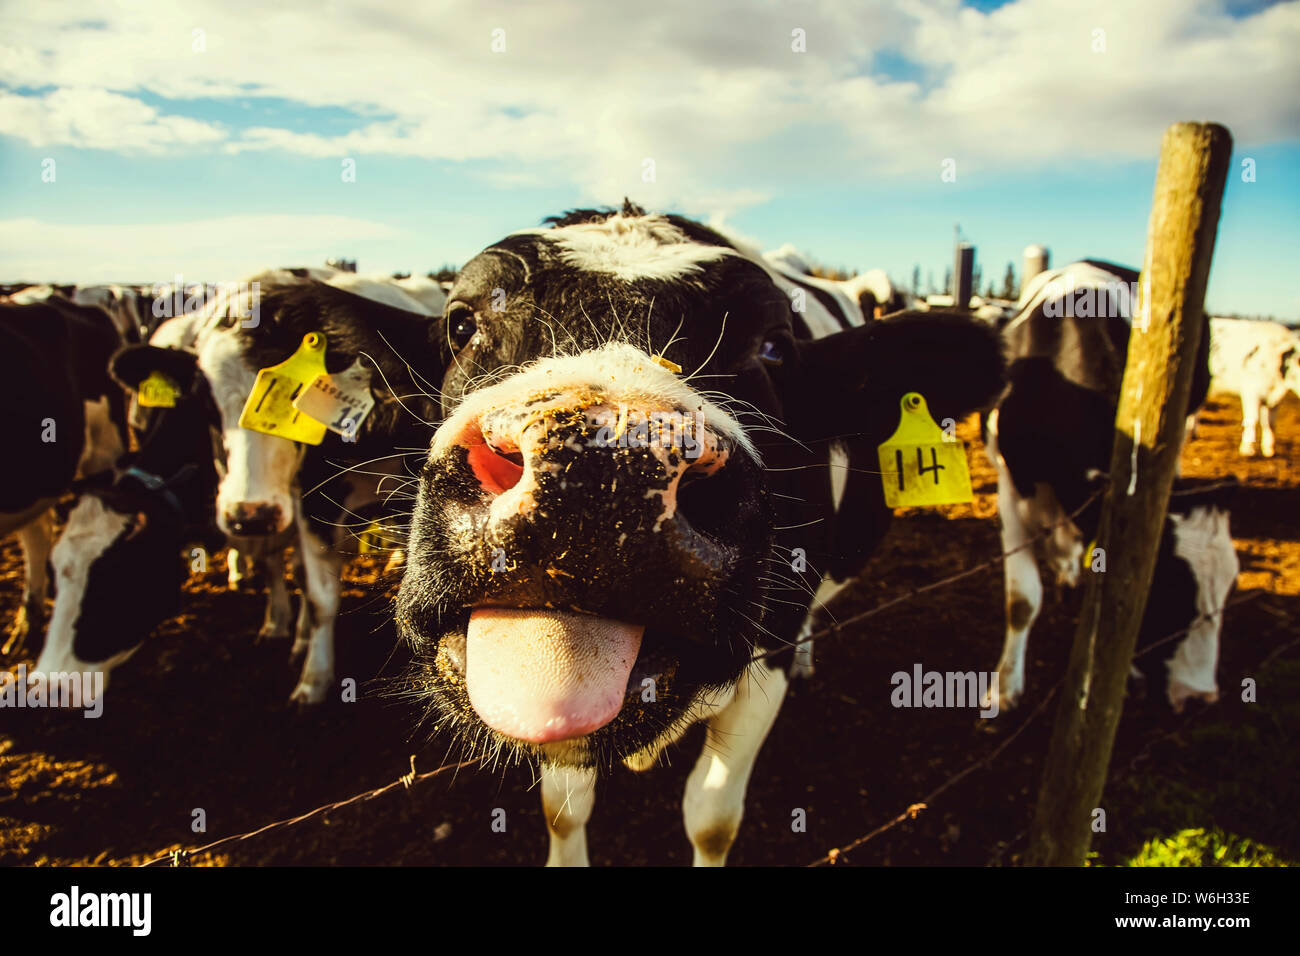 Nahaufnahme einer neugierigen Holstein-Kuh mit Identifikationsschildern, die auf die Kamera schaut und ihre Zunge herausragt, während sie an einem Stacheldrahtzaun steht... Stockfoto